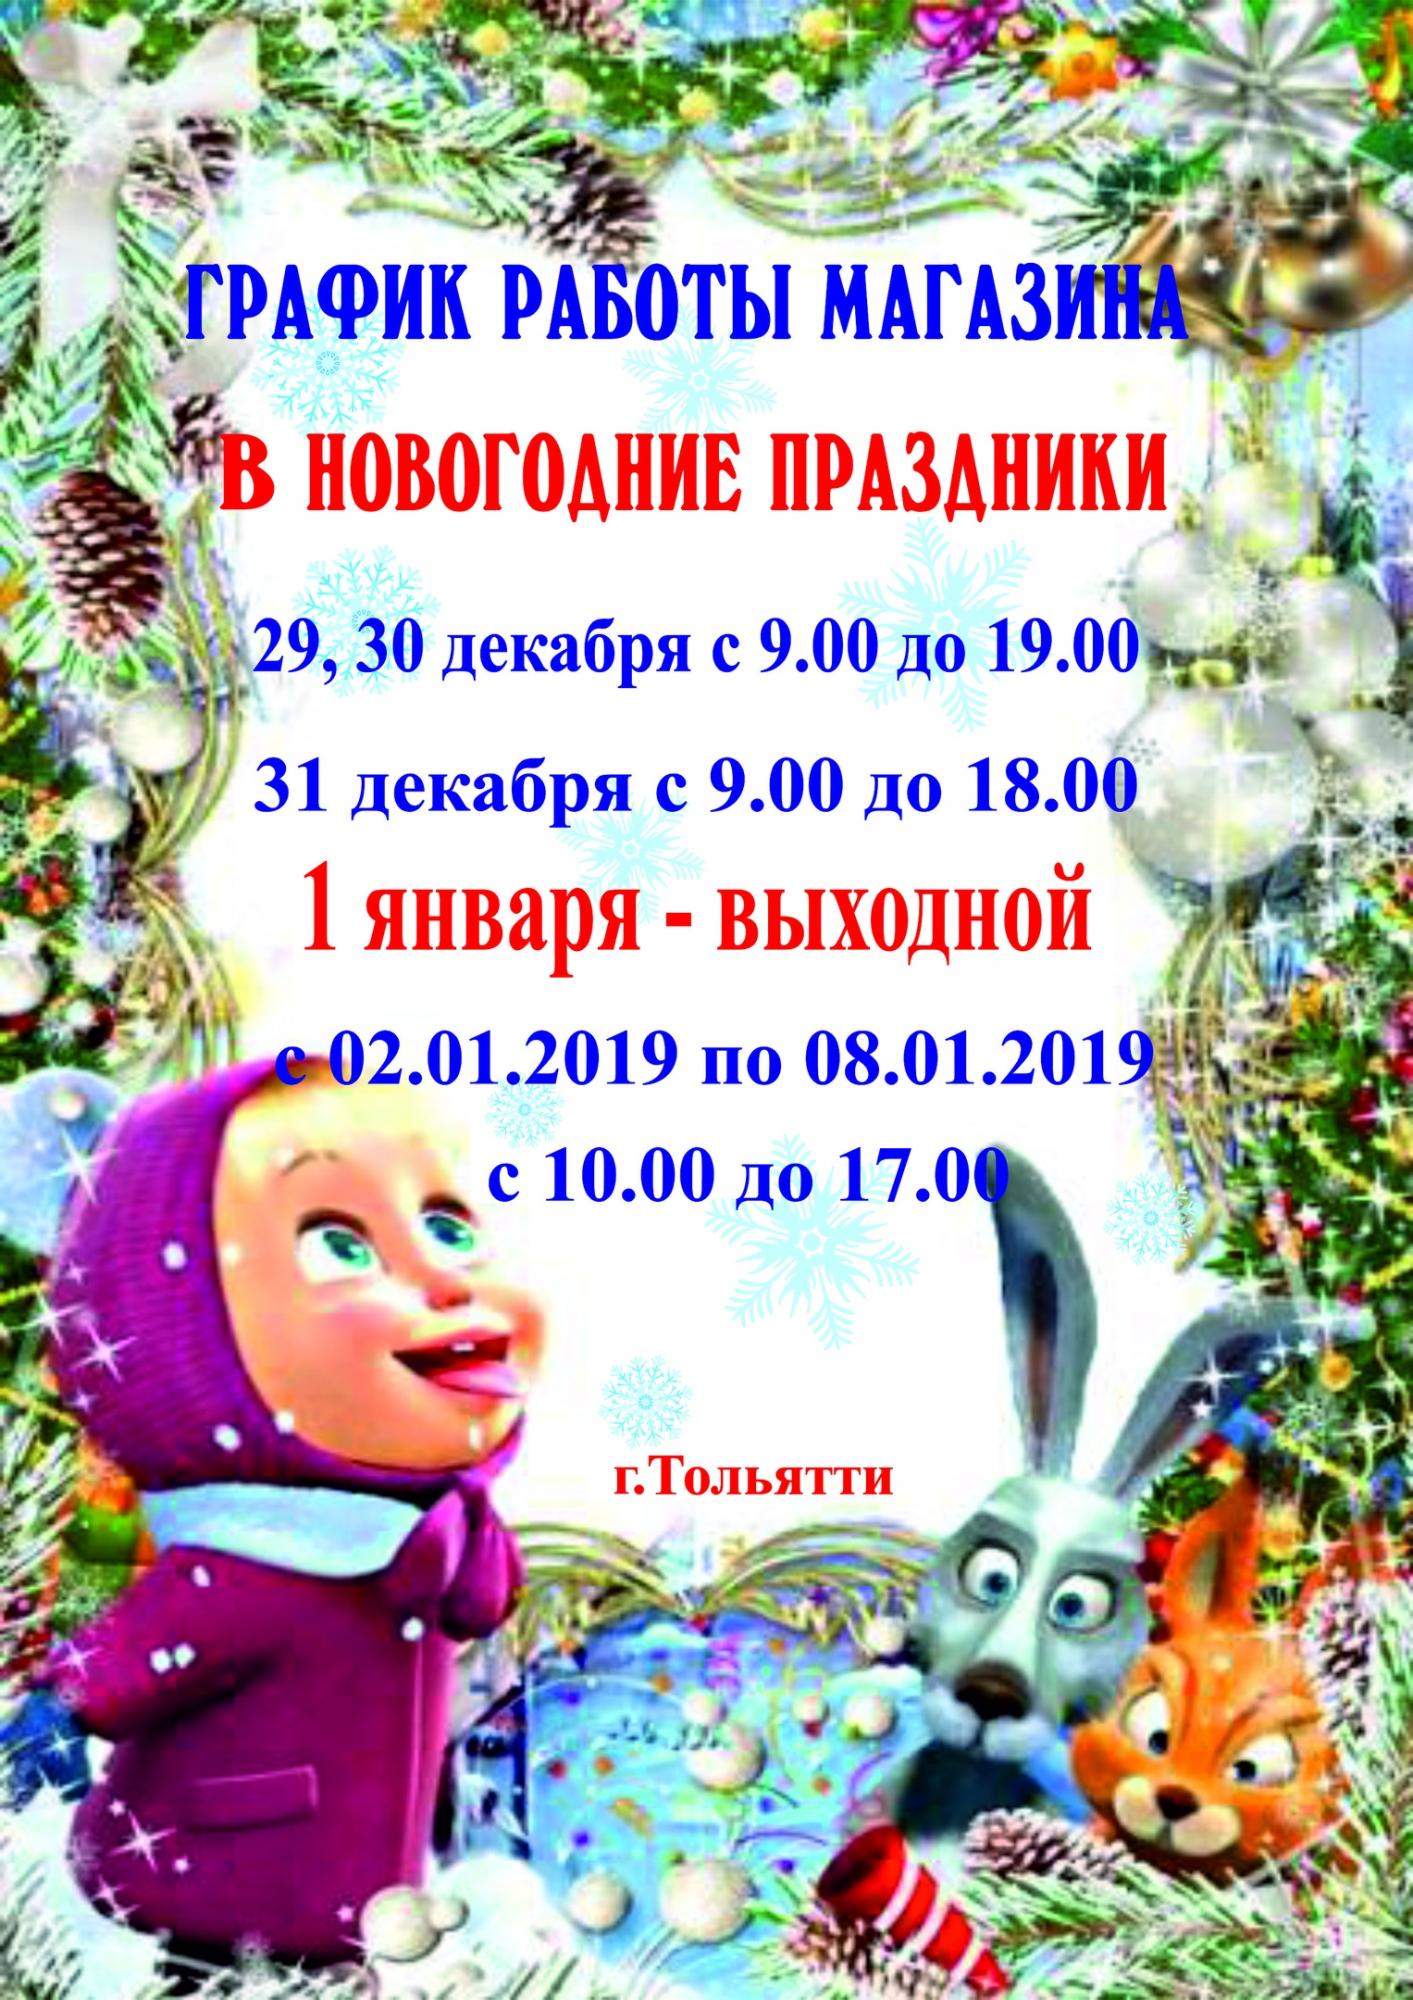 Праздничный график работы магазинов  "Маленькая умница"  г. Тольятти